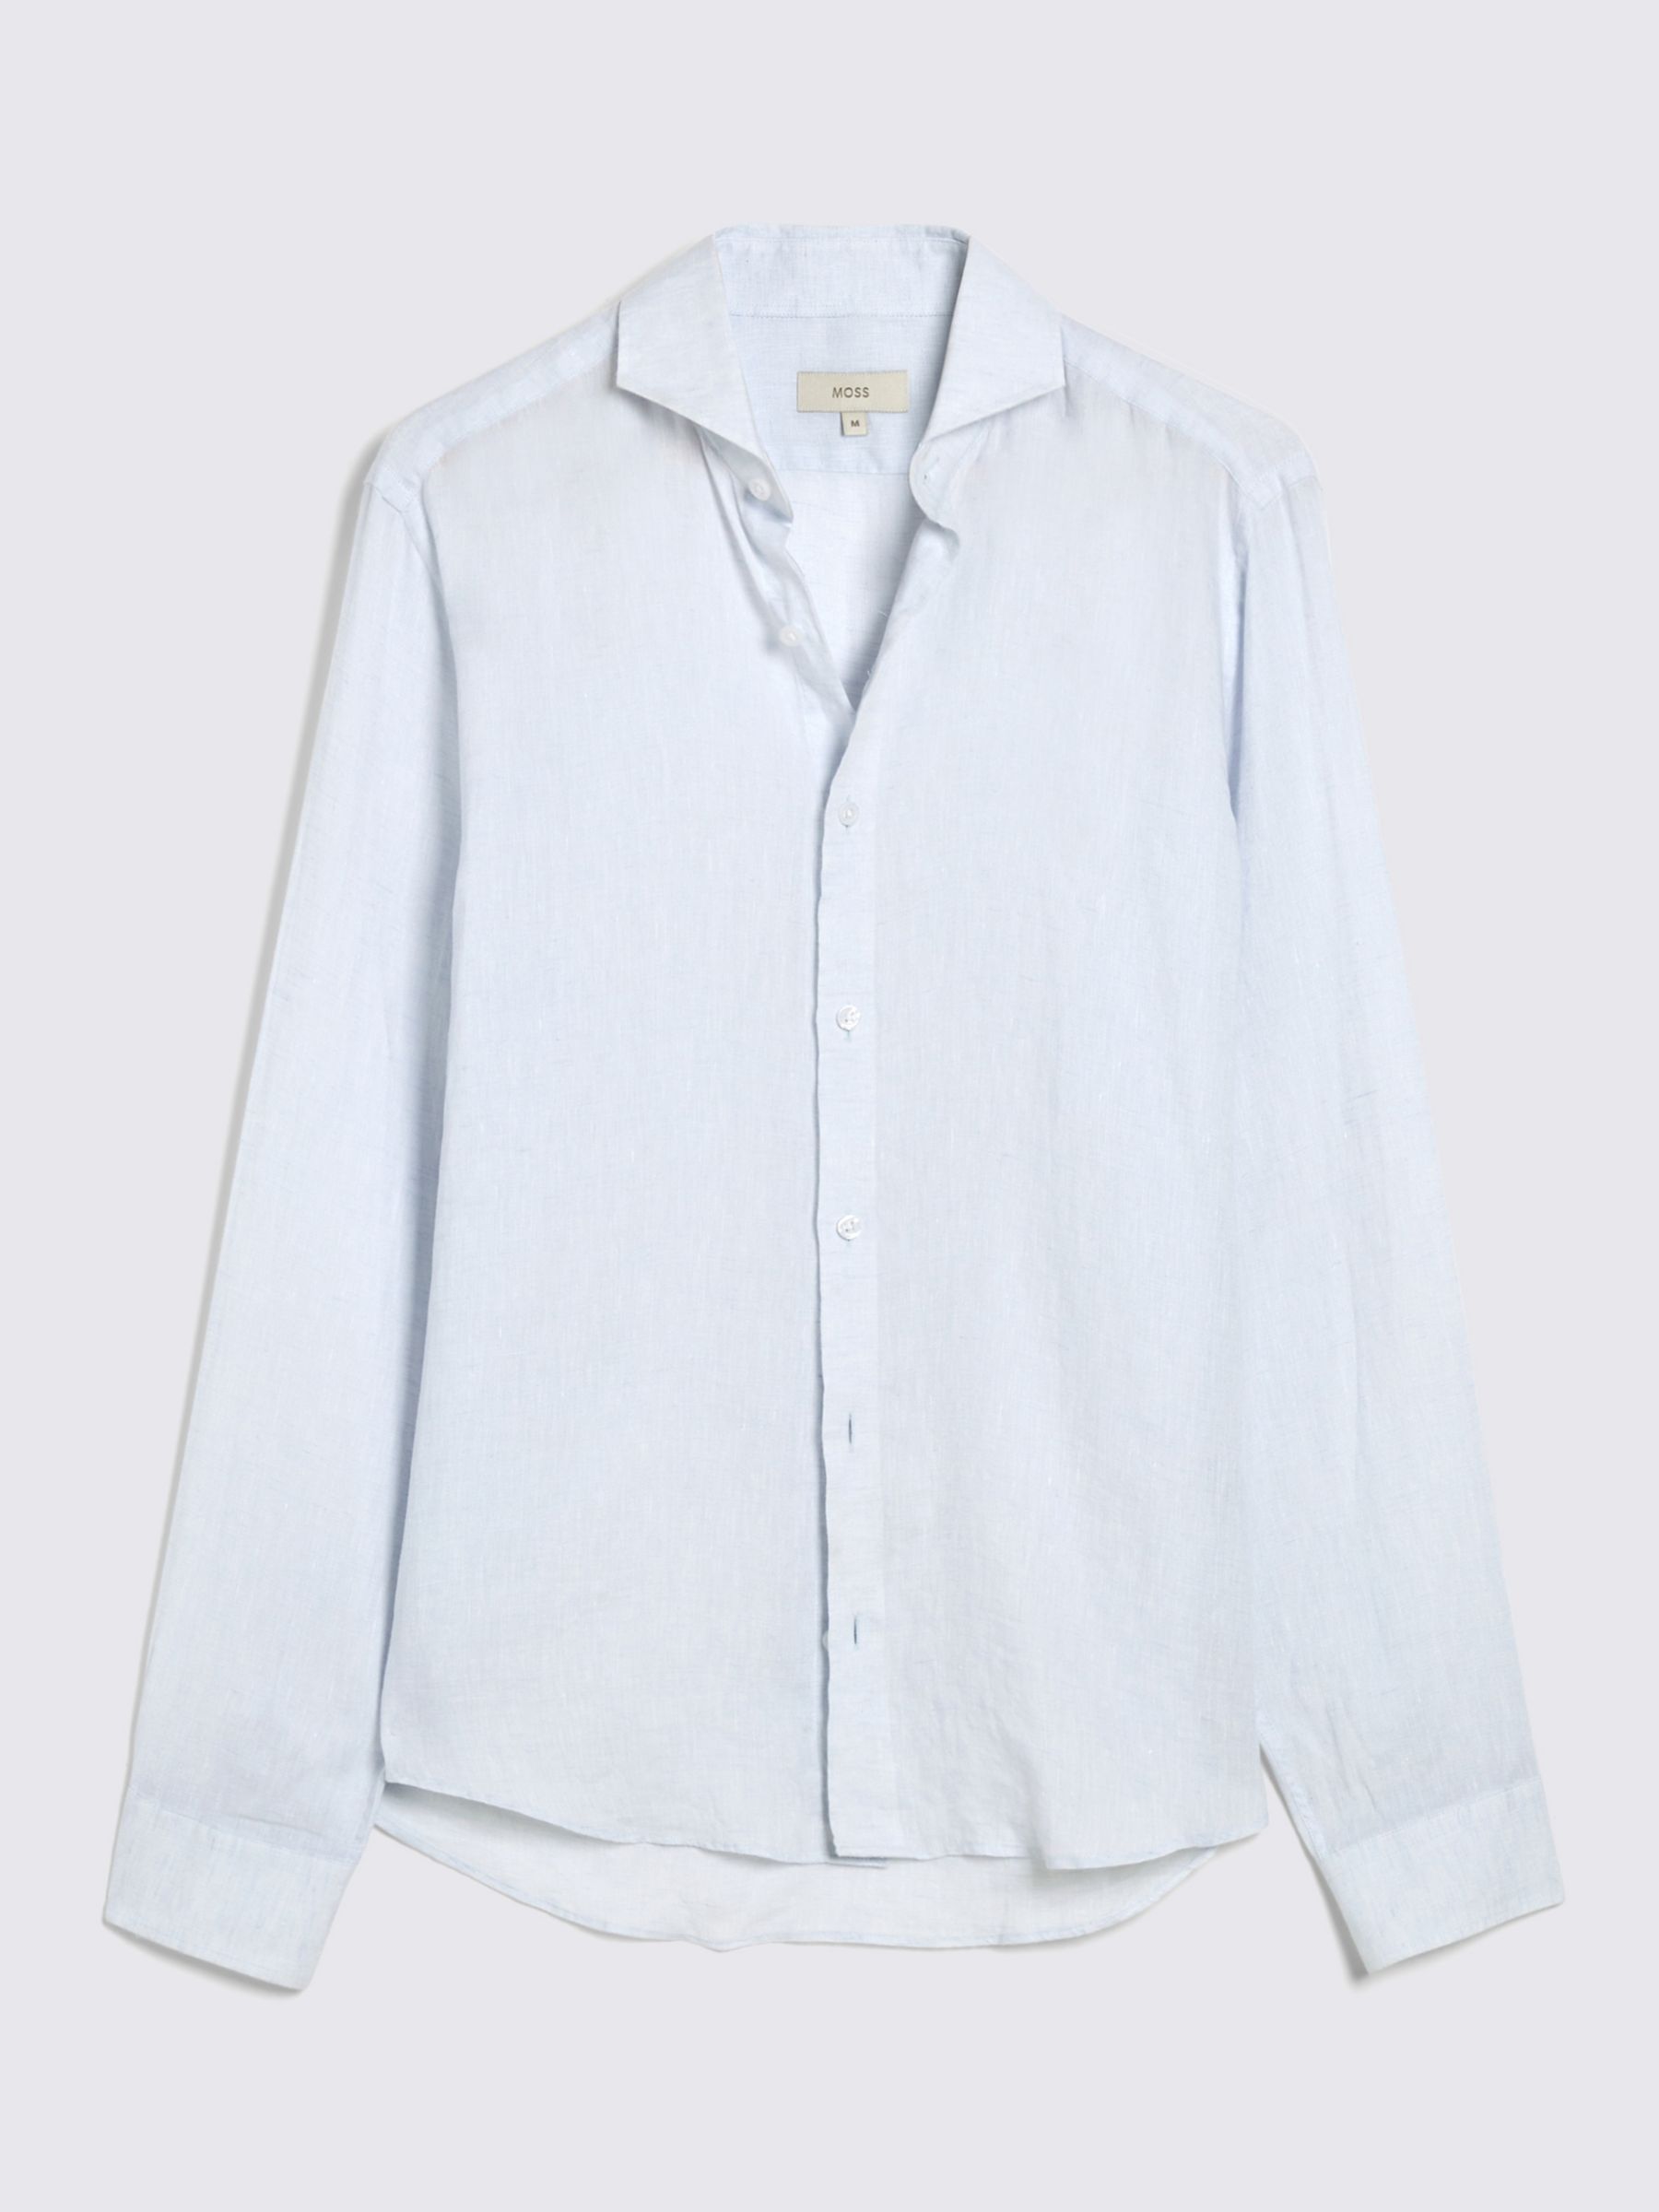 Moss Tailored Fit Linen Long Sleeve Shirt, Sky Blue, S